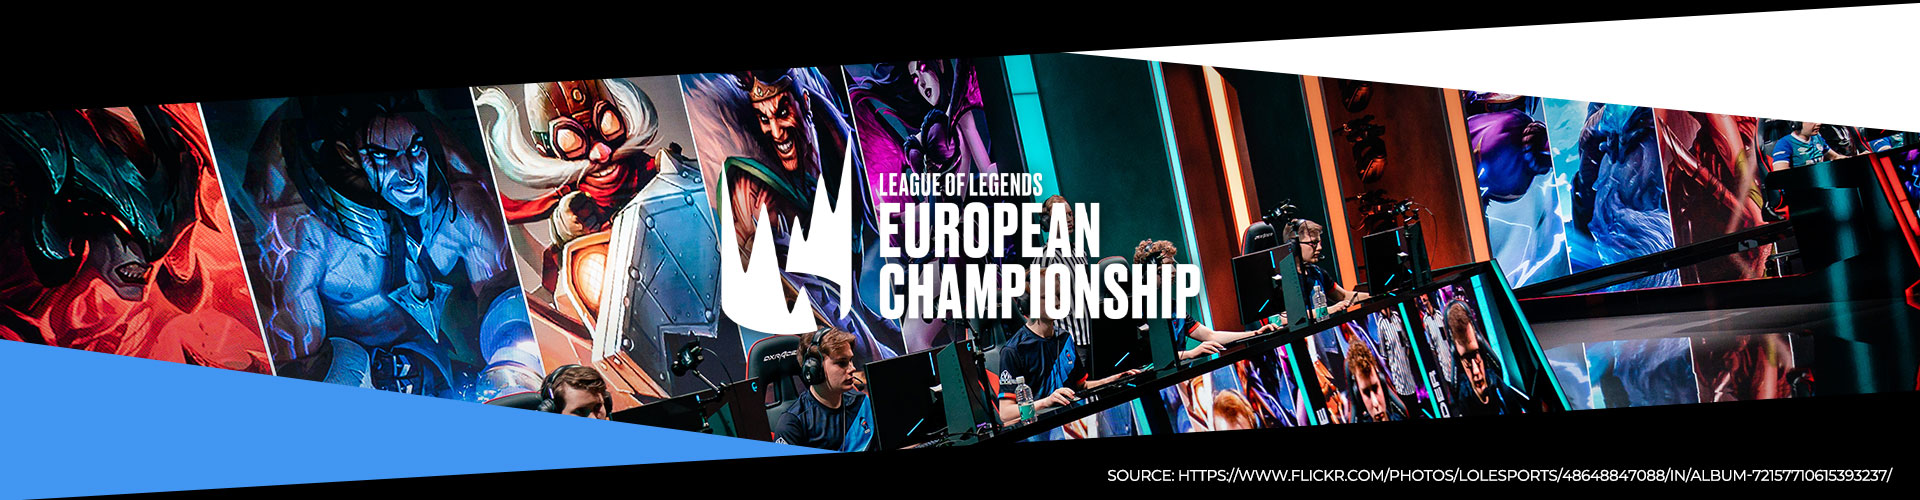 League of Legends European Championship (LEC) - Kevätkausi 2020